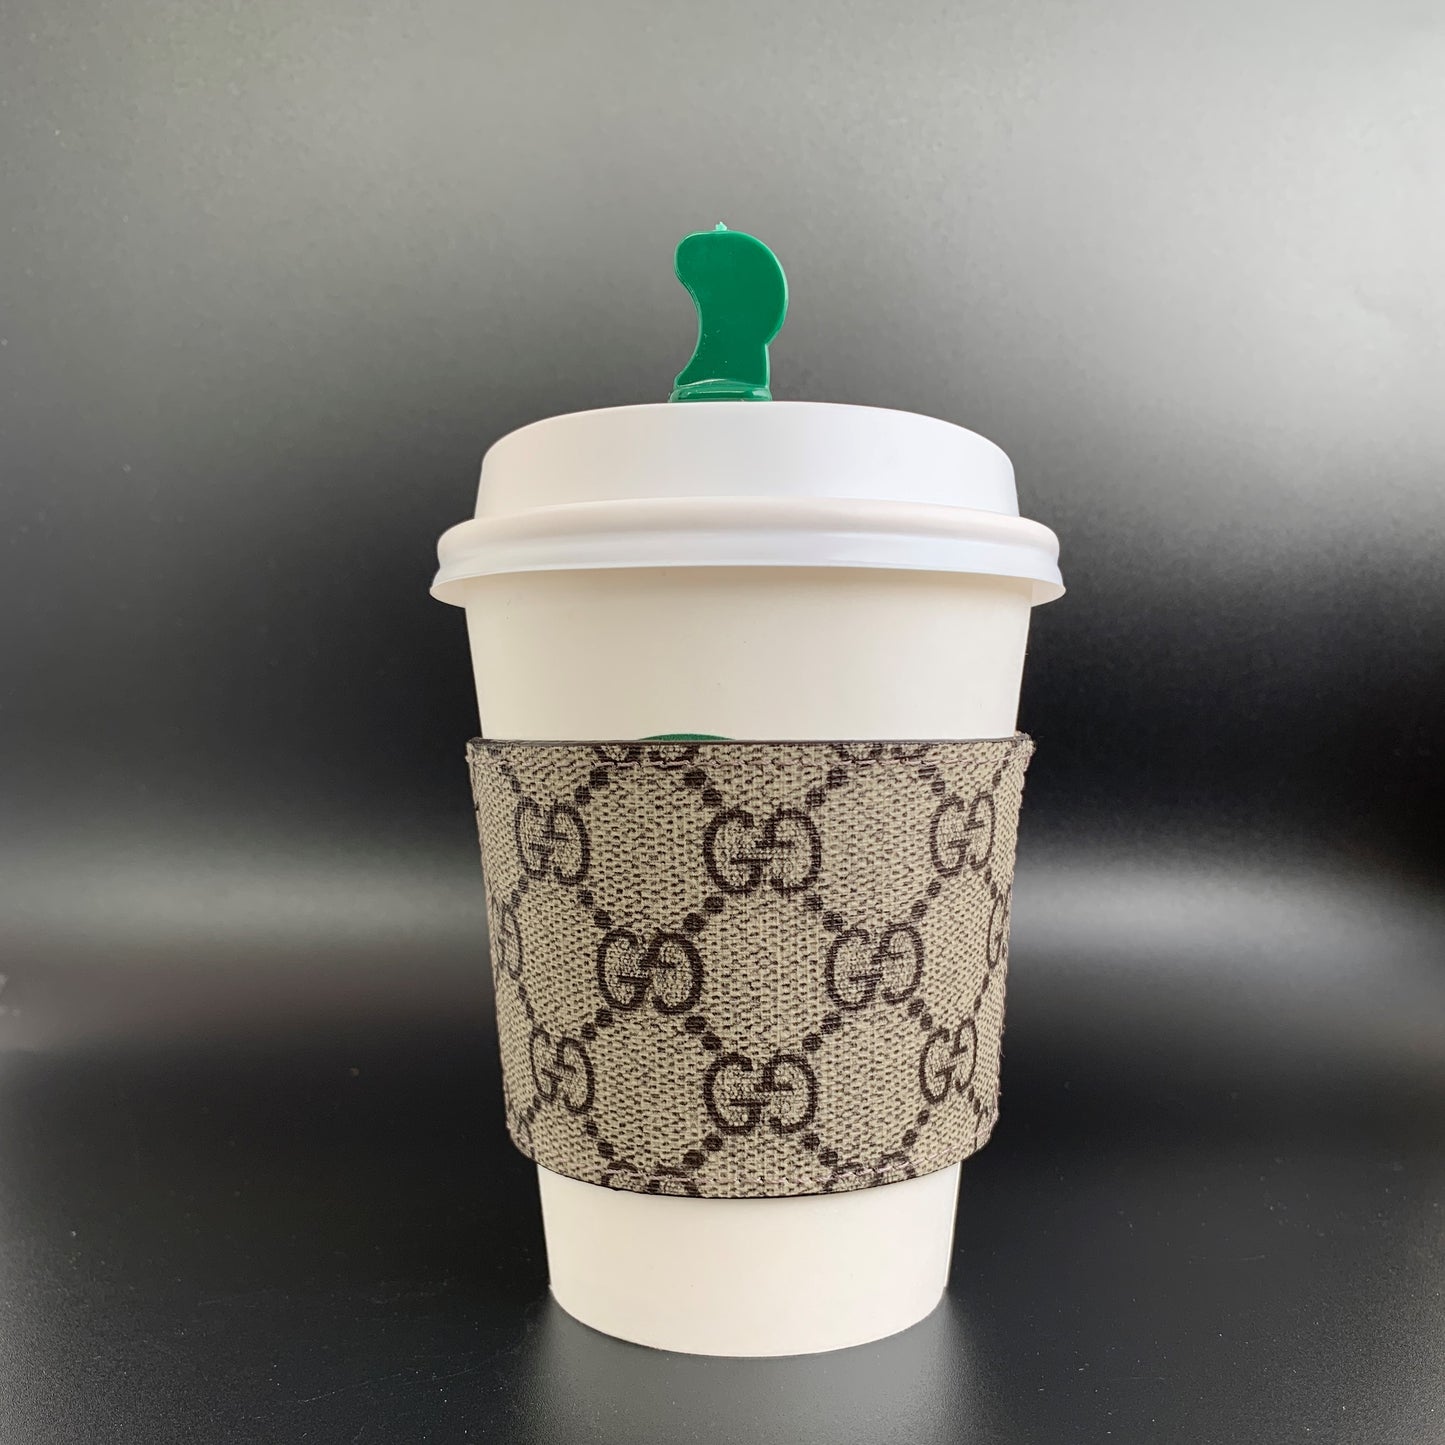 Starbucks Keychain Coffee holder